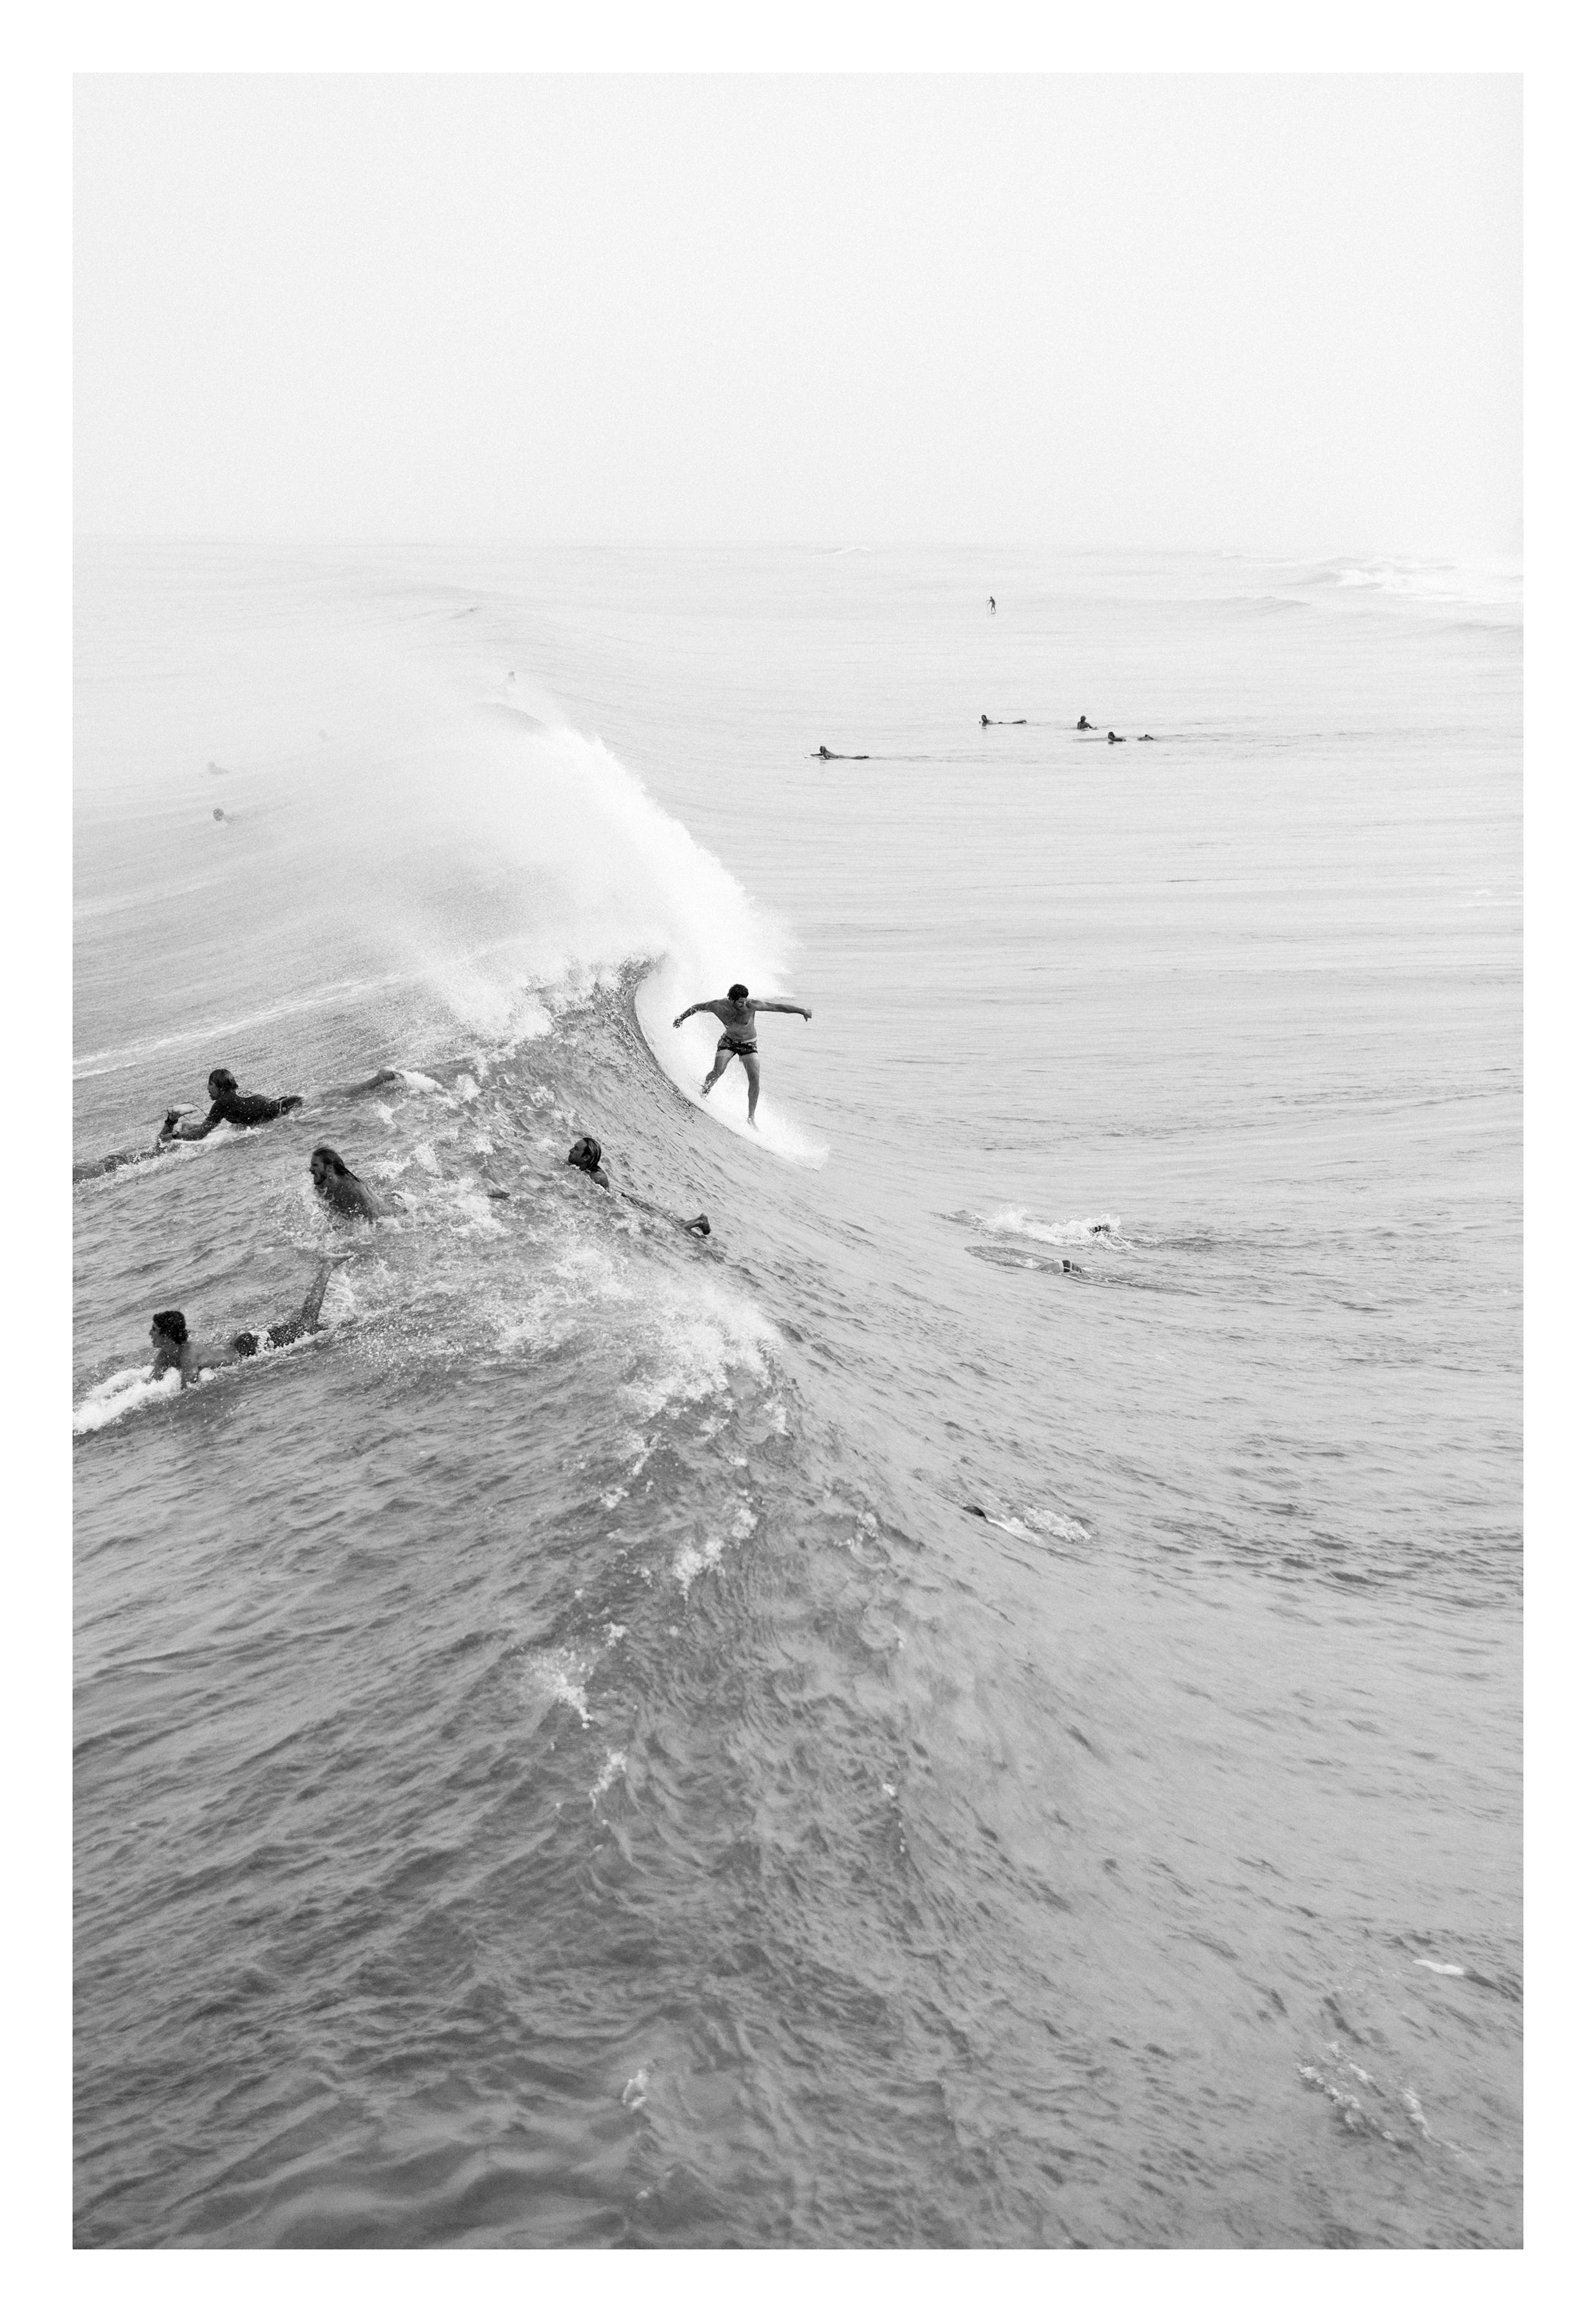 The Drop – Surffotografie B&W, Druck in limitierter Auflage, signiert Archival 2016